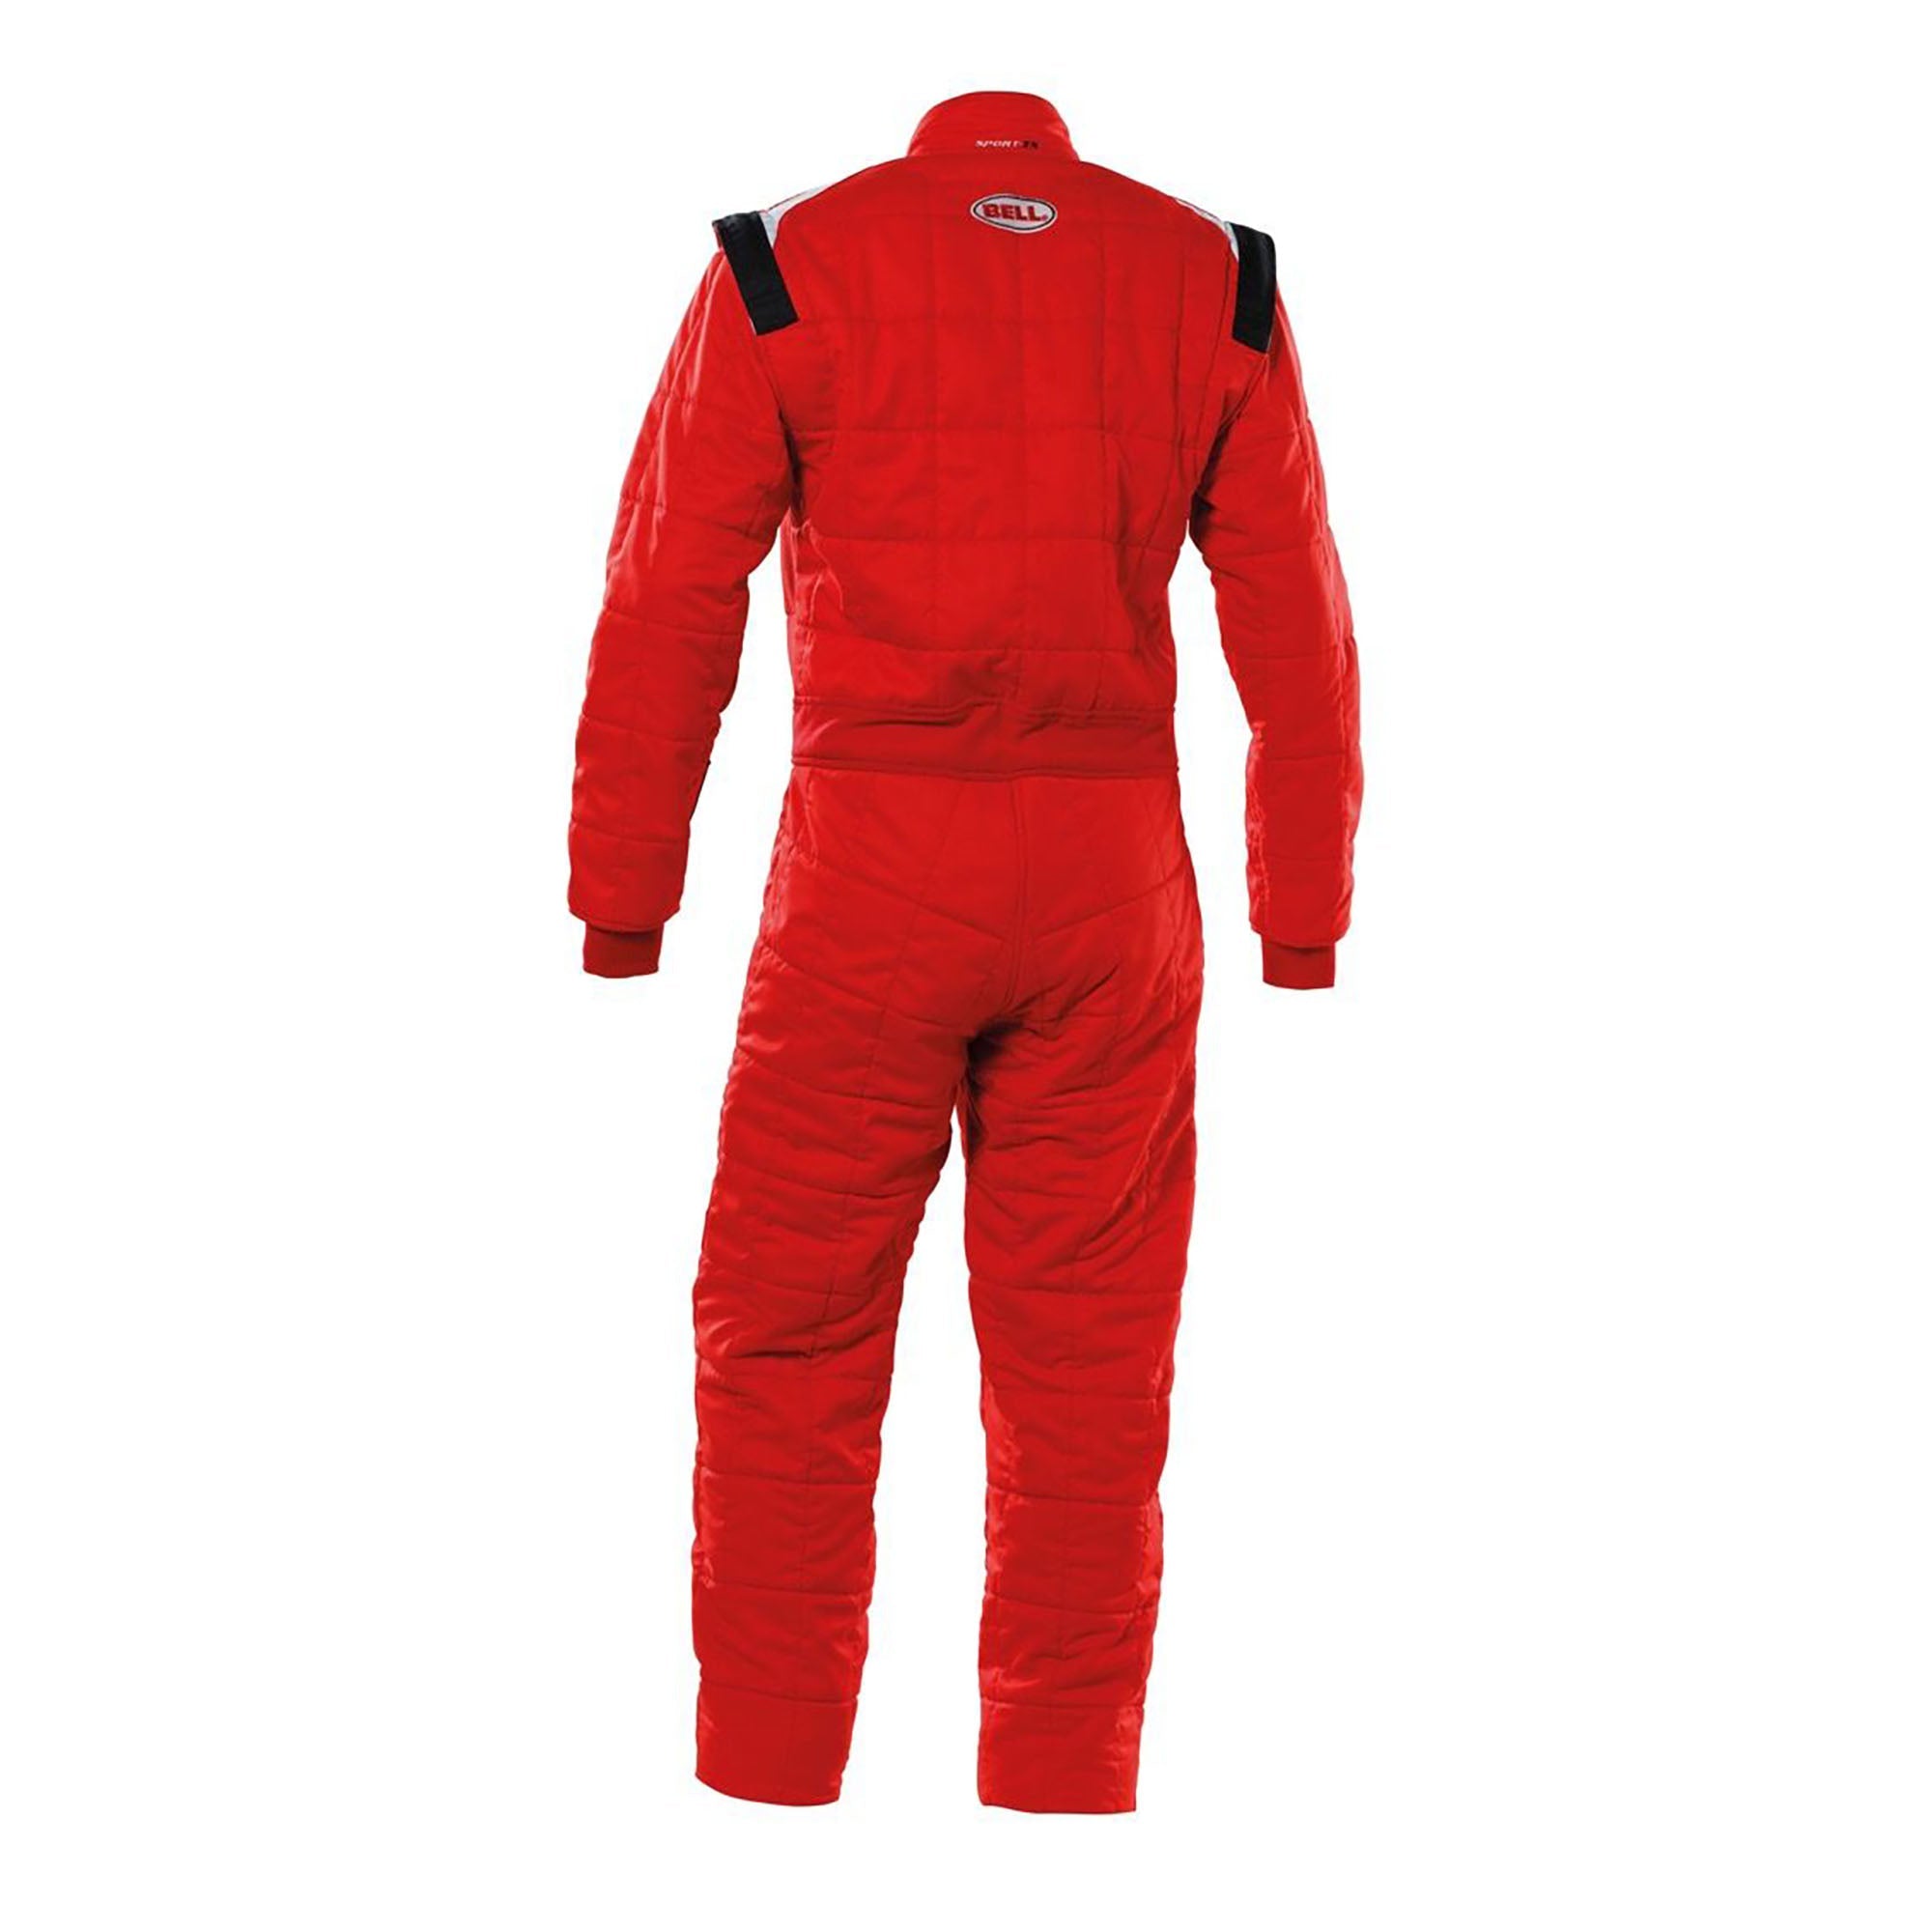 Bell Sport-TX Racing Suit